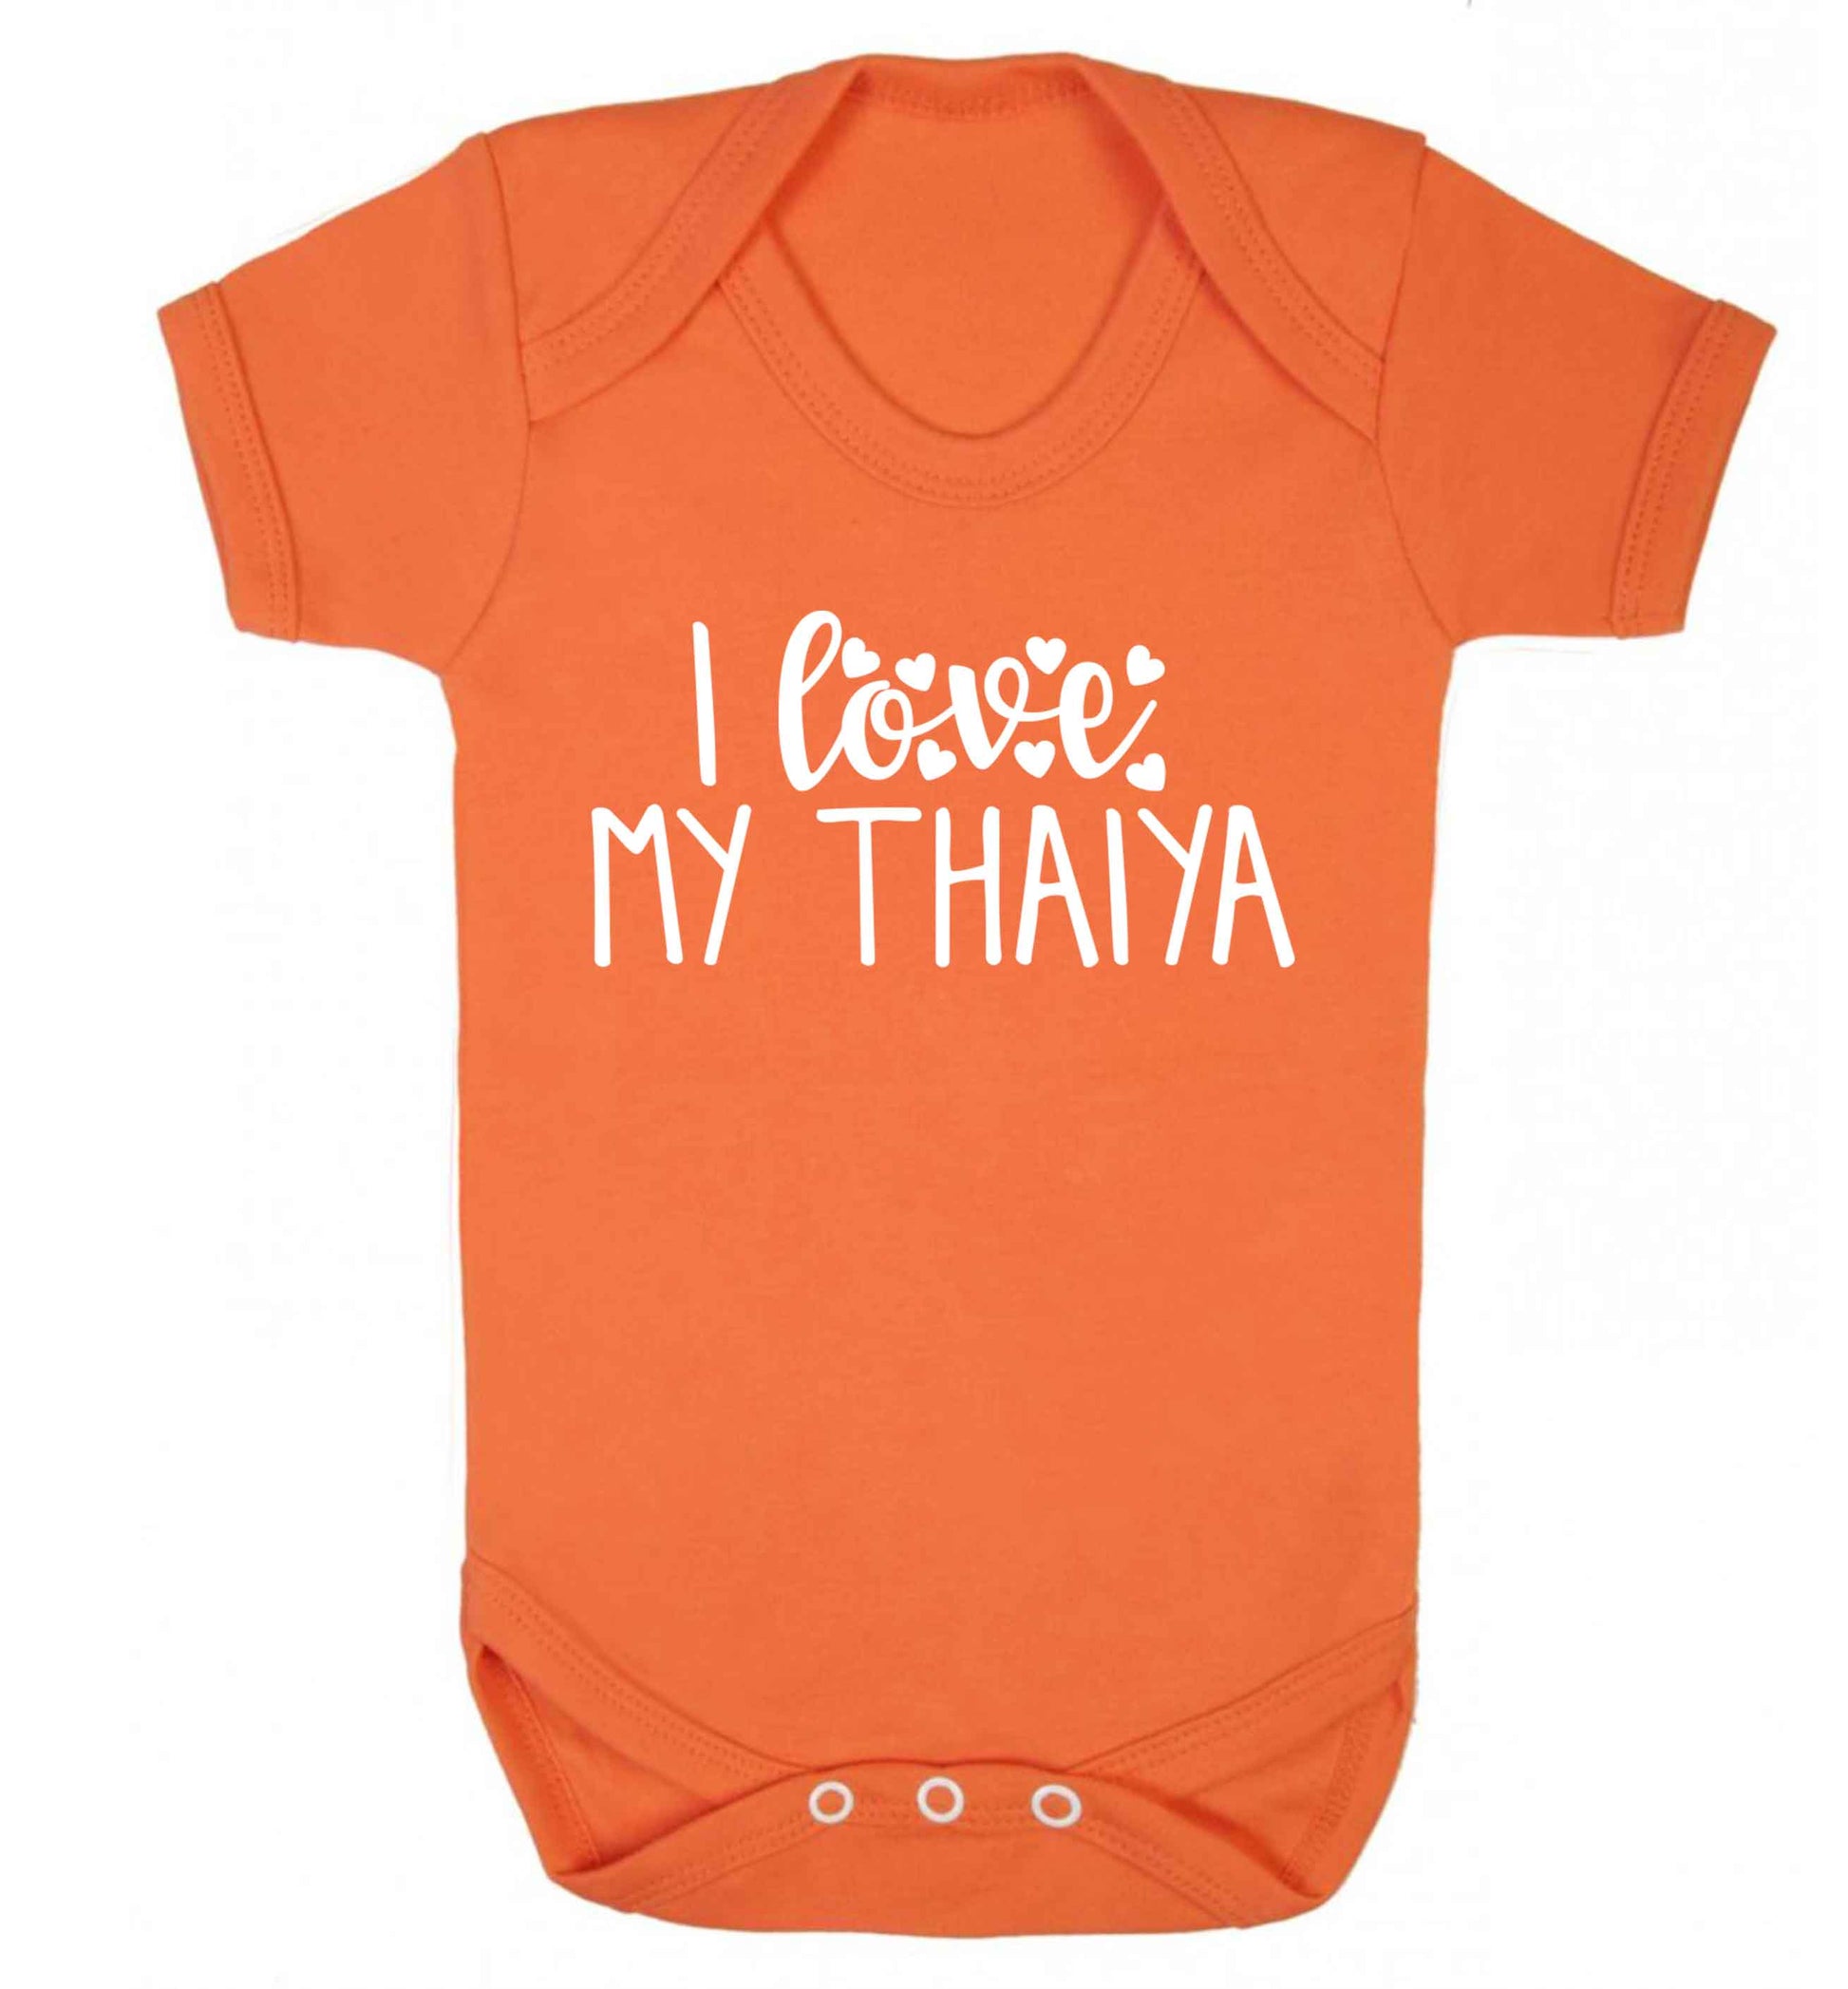 I love my thaiya Baby Vest orange 18-24 months